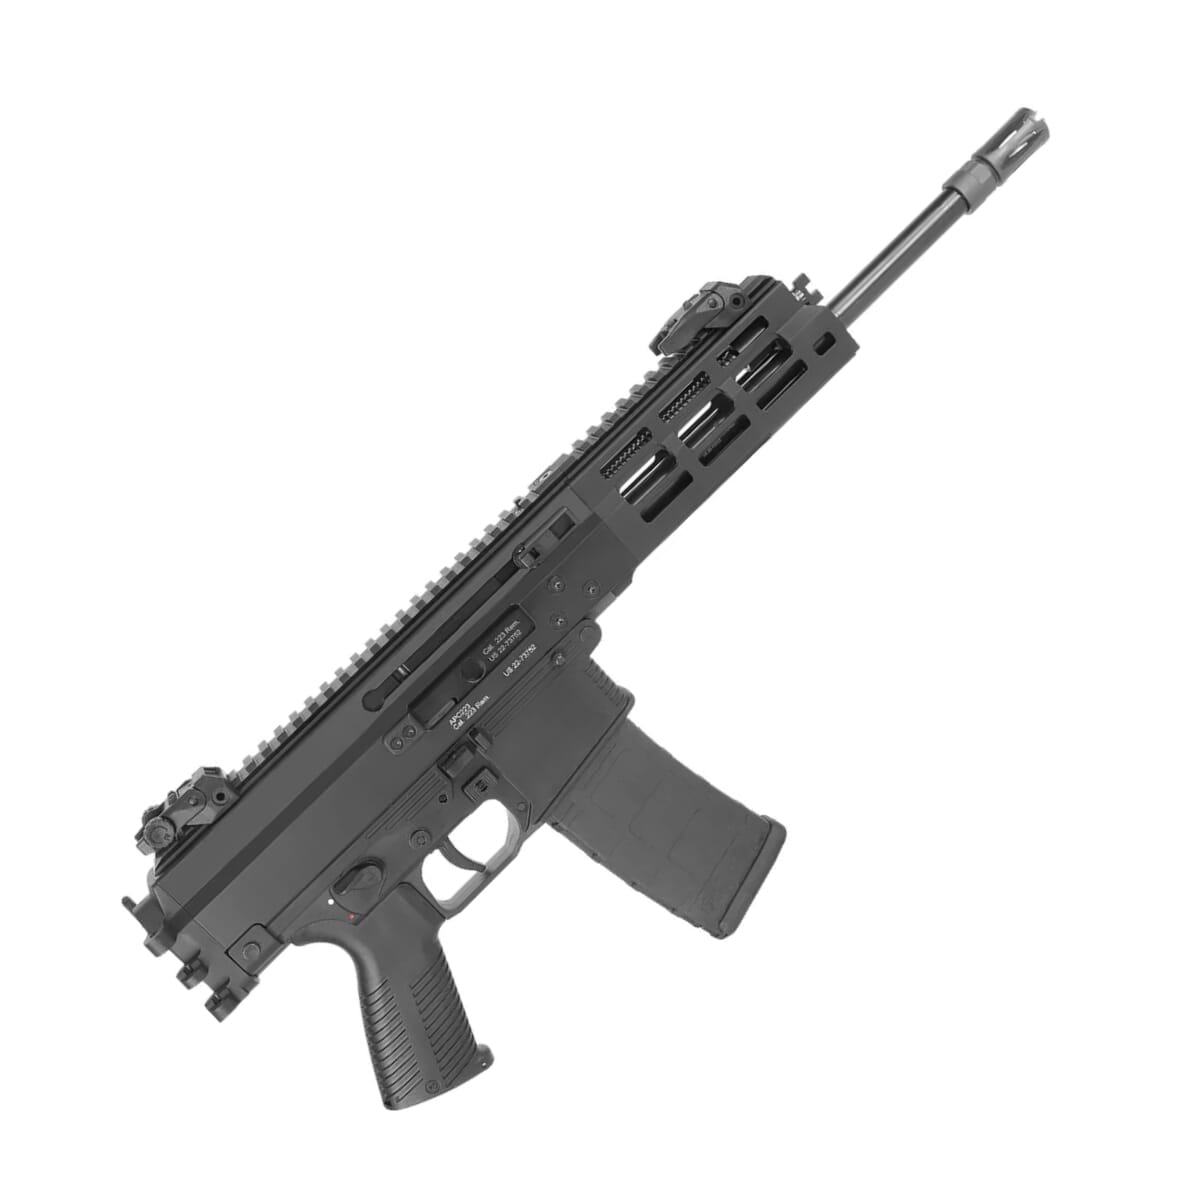 B&T APC223 PRO 5.56 NATO 12.12 1:7 Bbl Semi-Auto Pistol BT-361658 For Sale